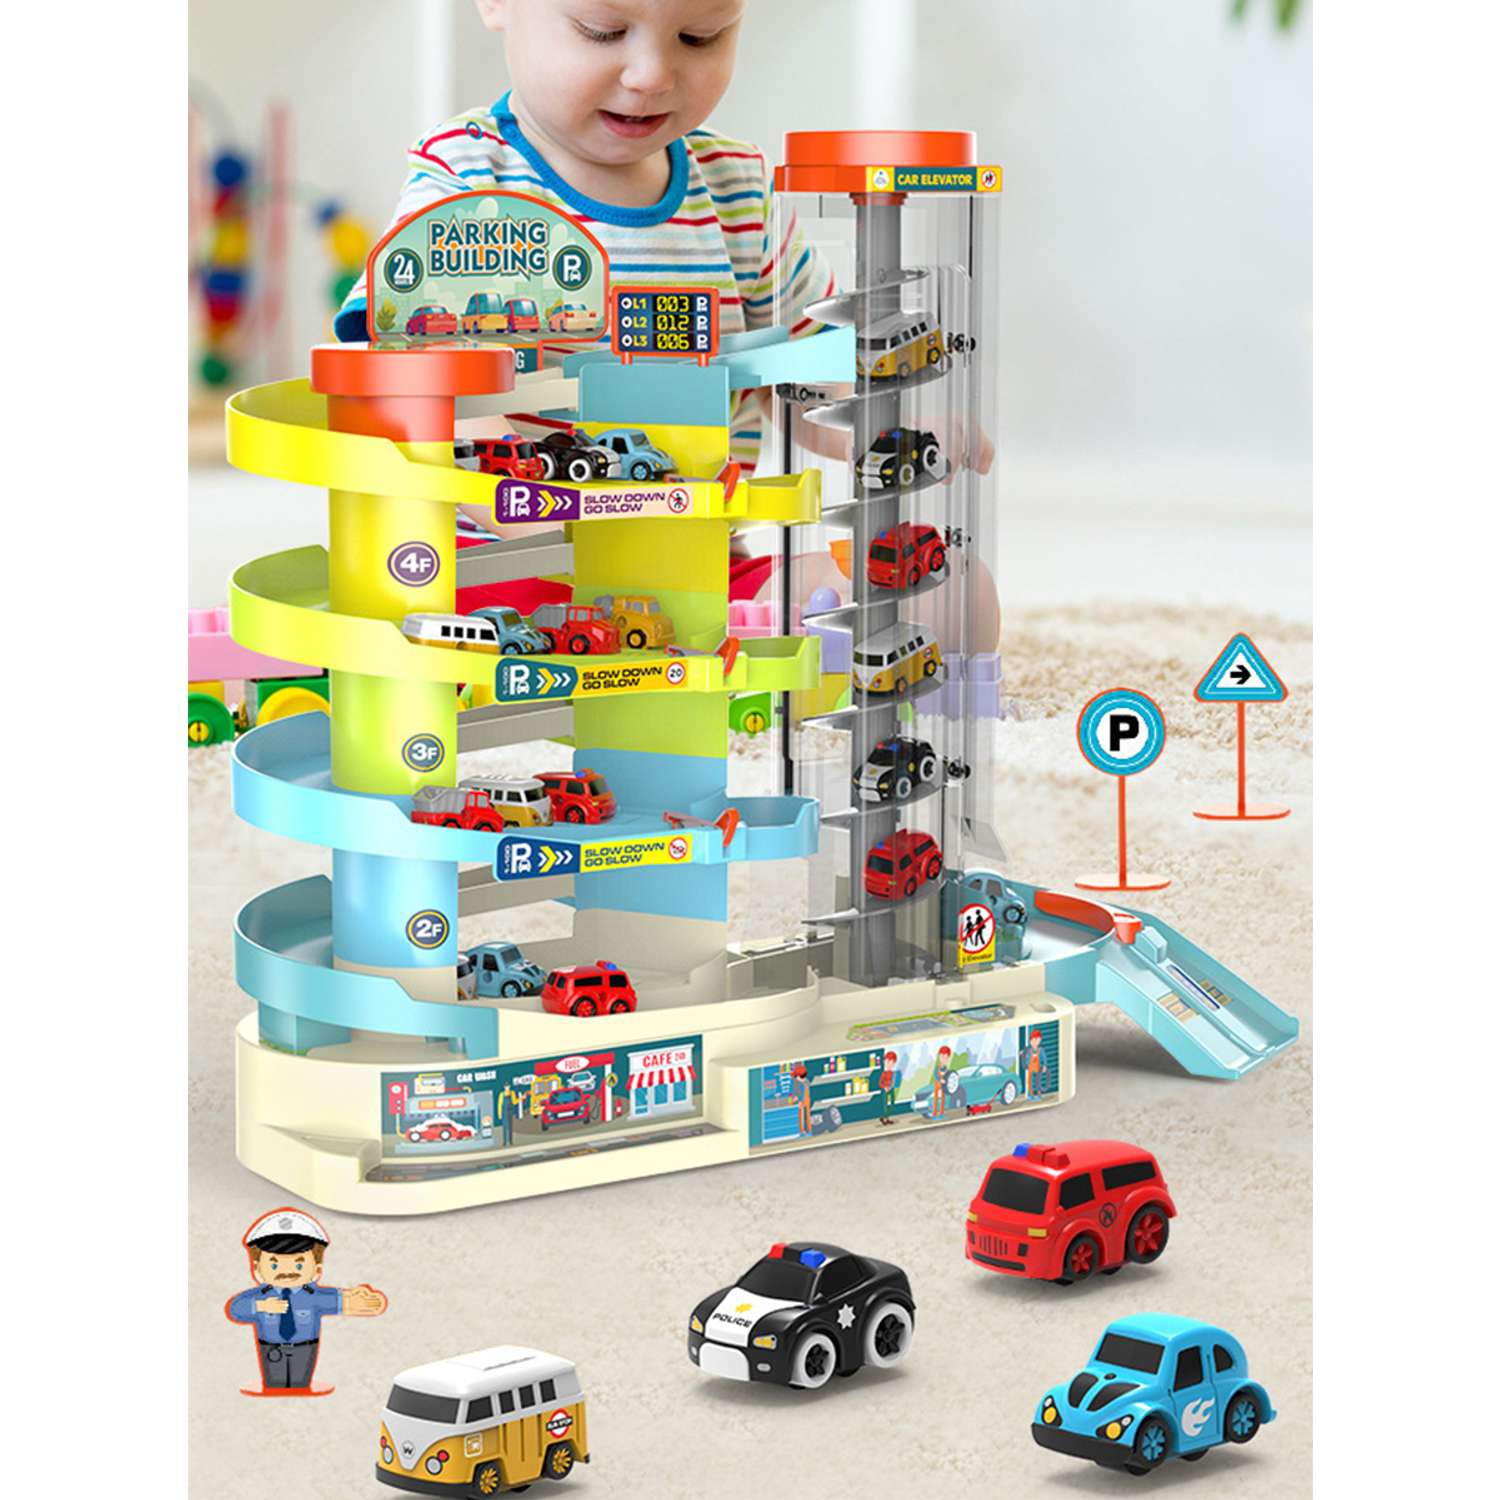 Чудо-город - магазин игрушек и миниатюрных построек для детей и коллекционеров